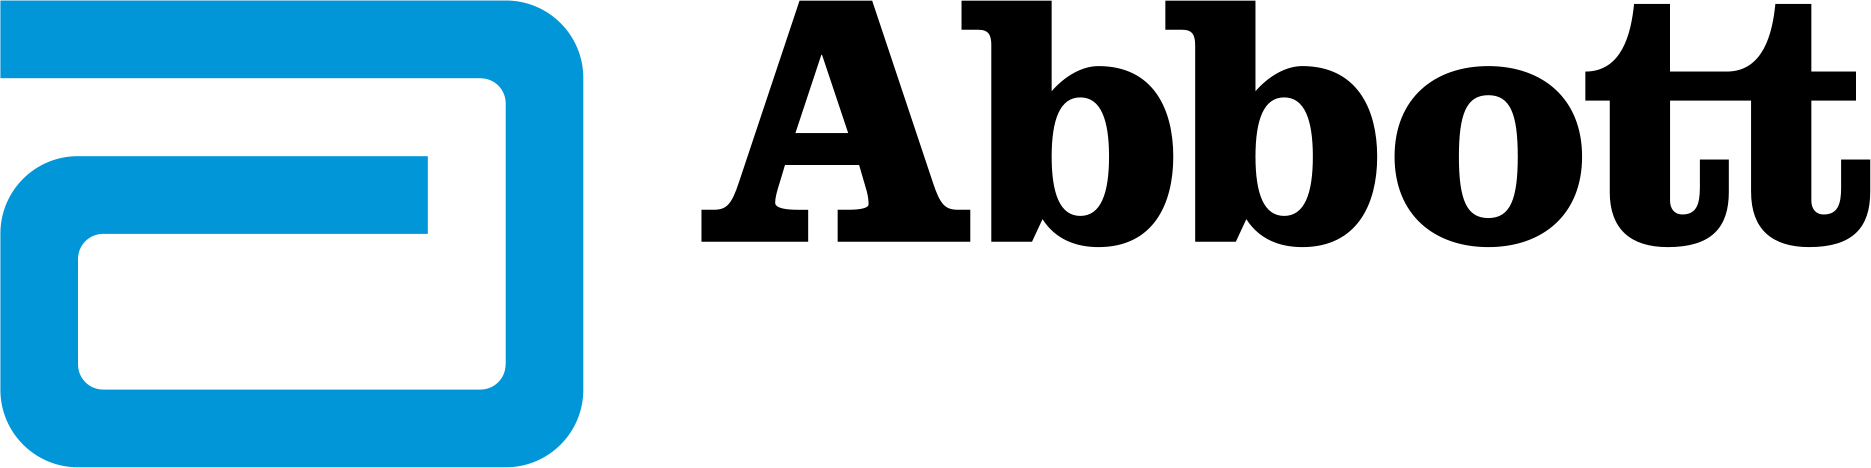 Abbott-logo-1